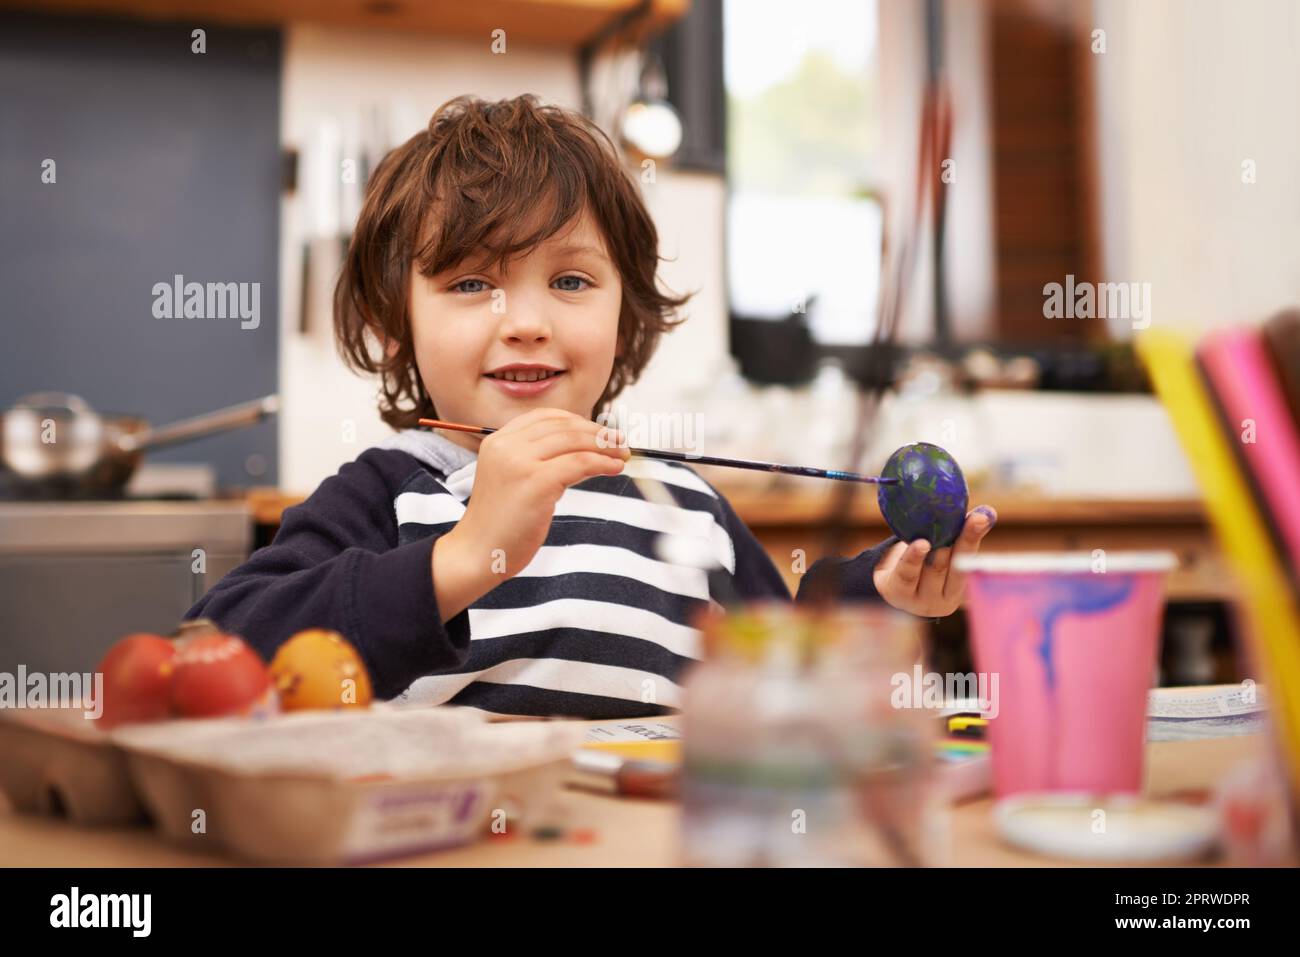 Eifrig mein osterei malen. Porträt eines kleinen Jungen, der ein blaues Ei malt. Stockfoto